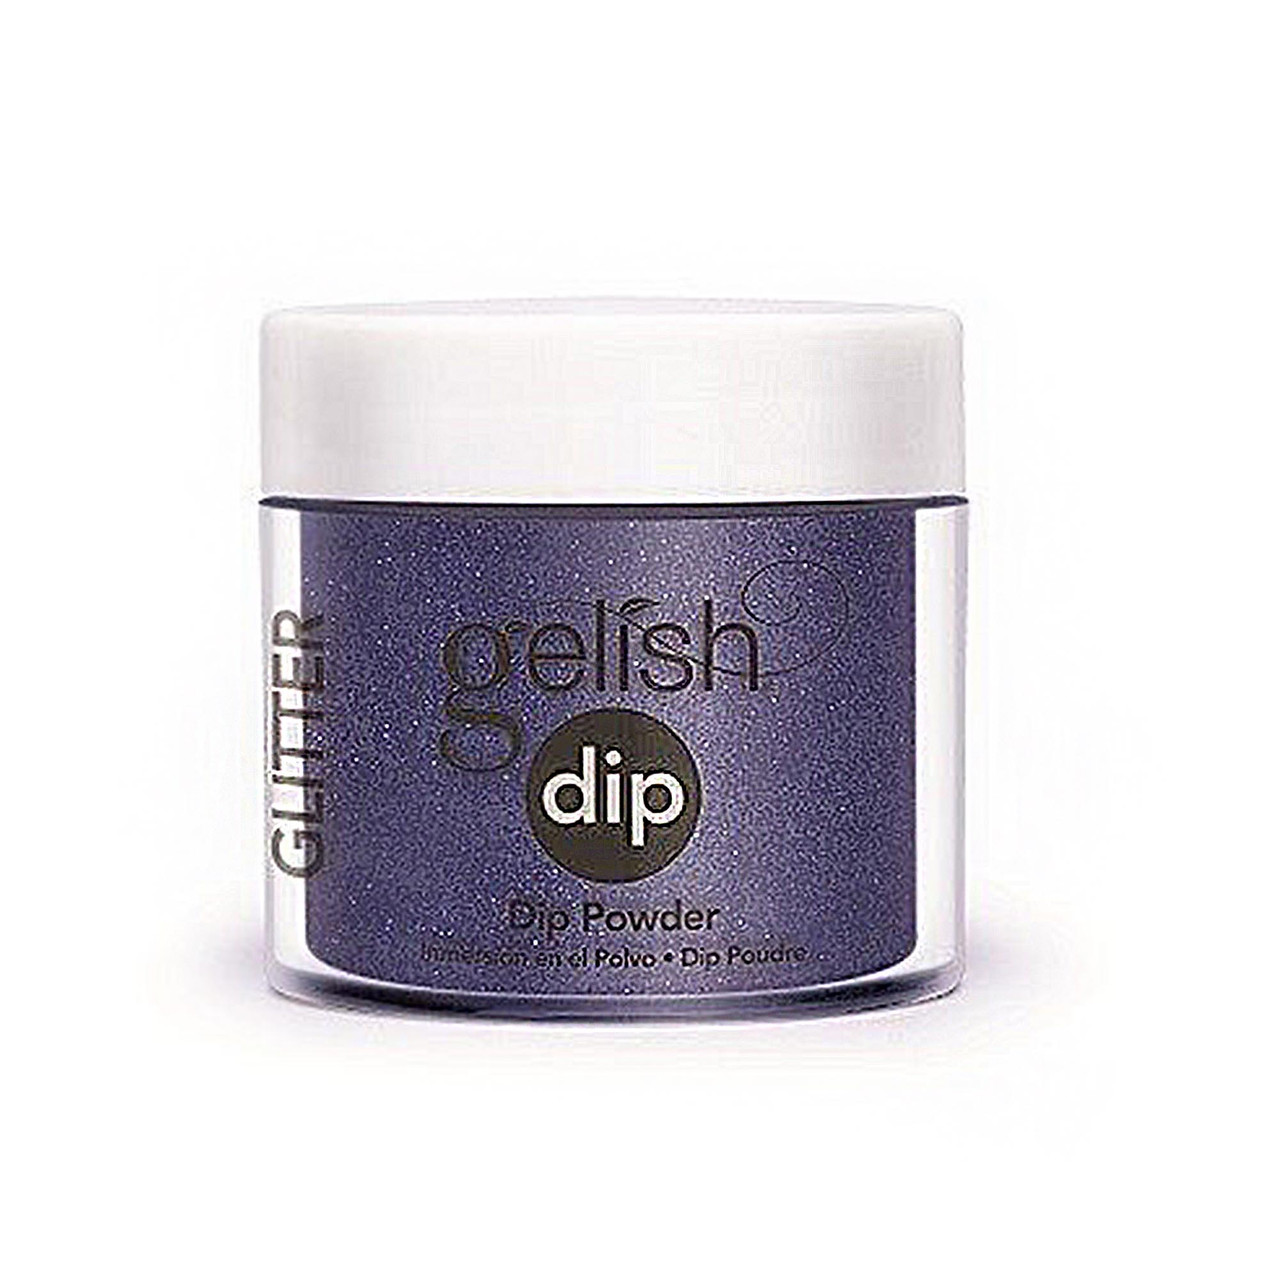 Gelish Dip Powder - 1610098 - Under The Stars